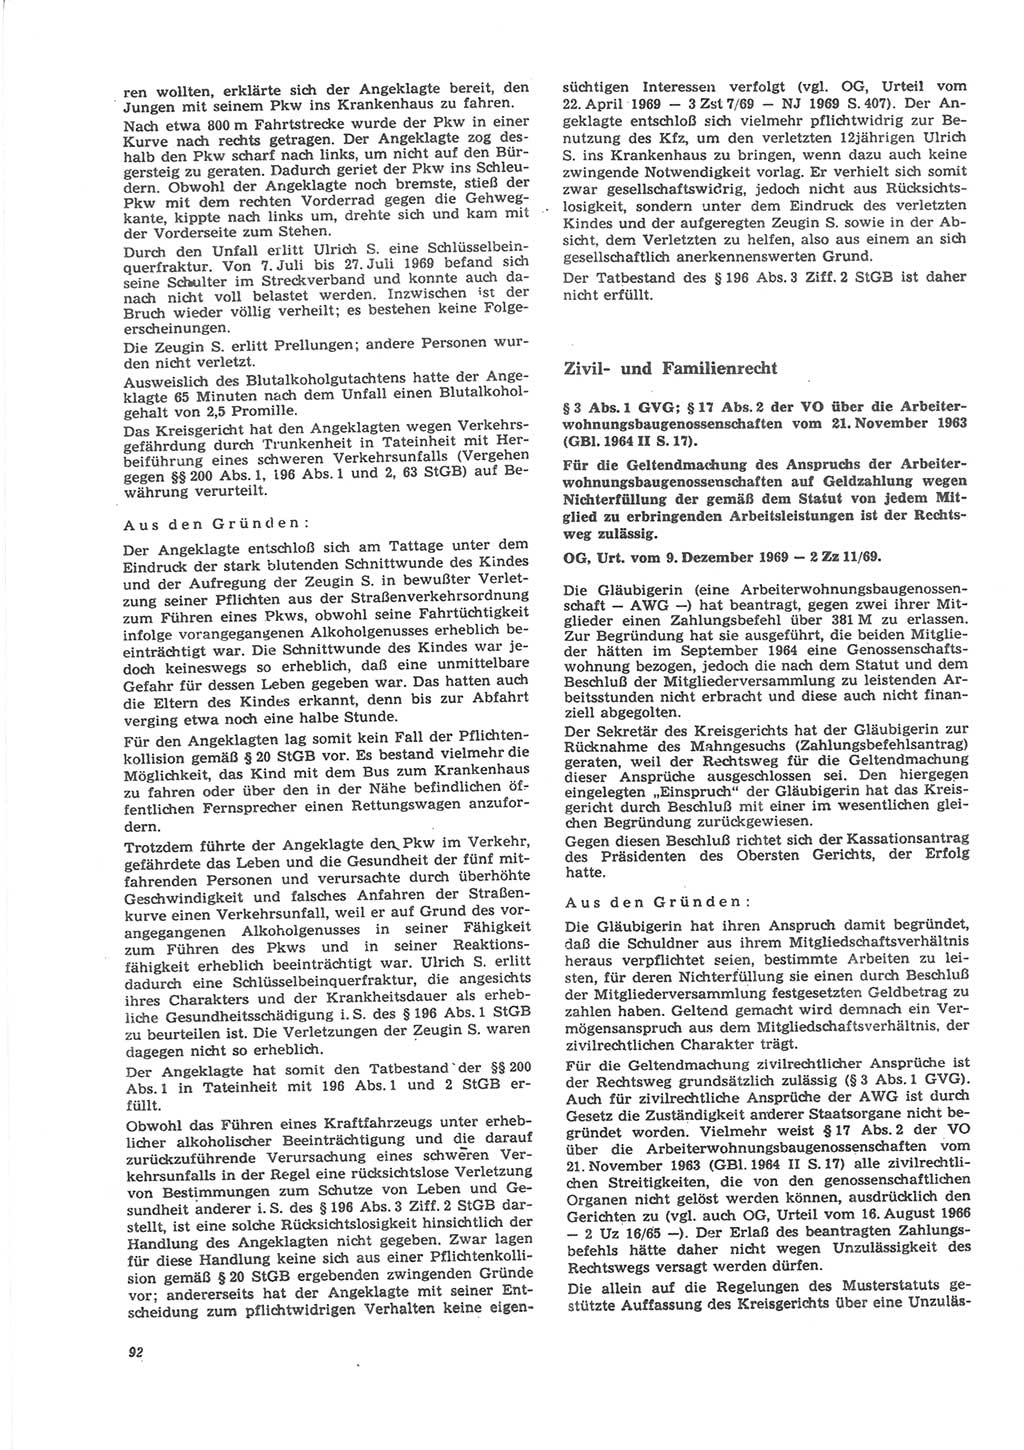 Neue Justiz (NJ), Zeitschrift für Recht und Rechtswissenschaft [Deutsche Demokratische Republik (DDR)], 24. Jahrgang 1970, Seite 92 (NJ DDR 1970, S. 92)